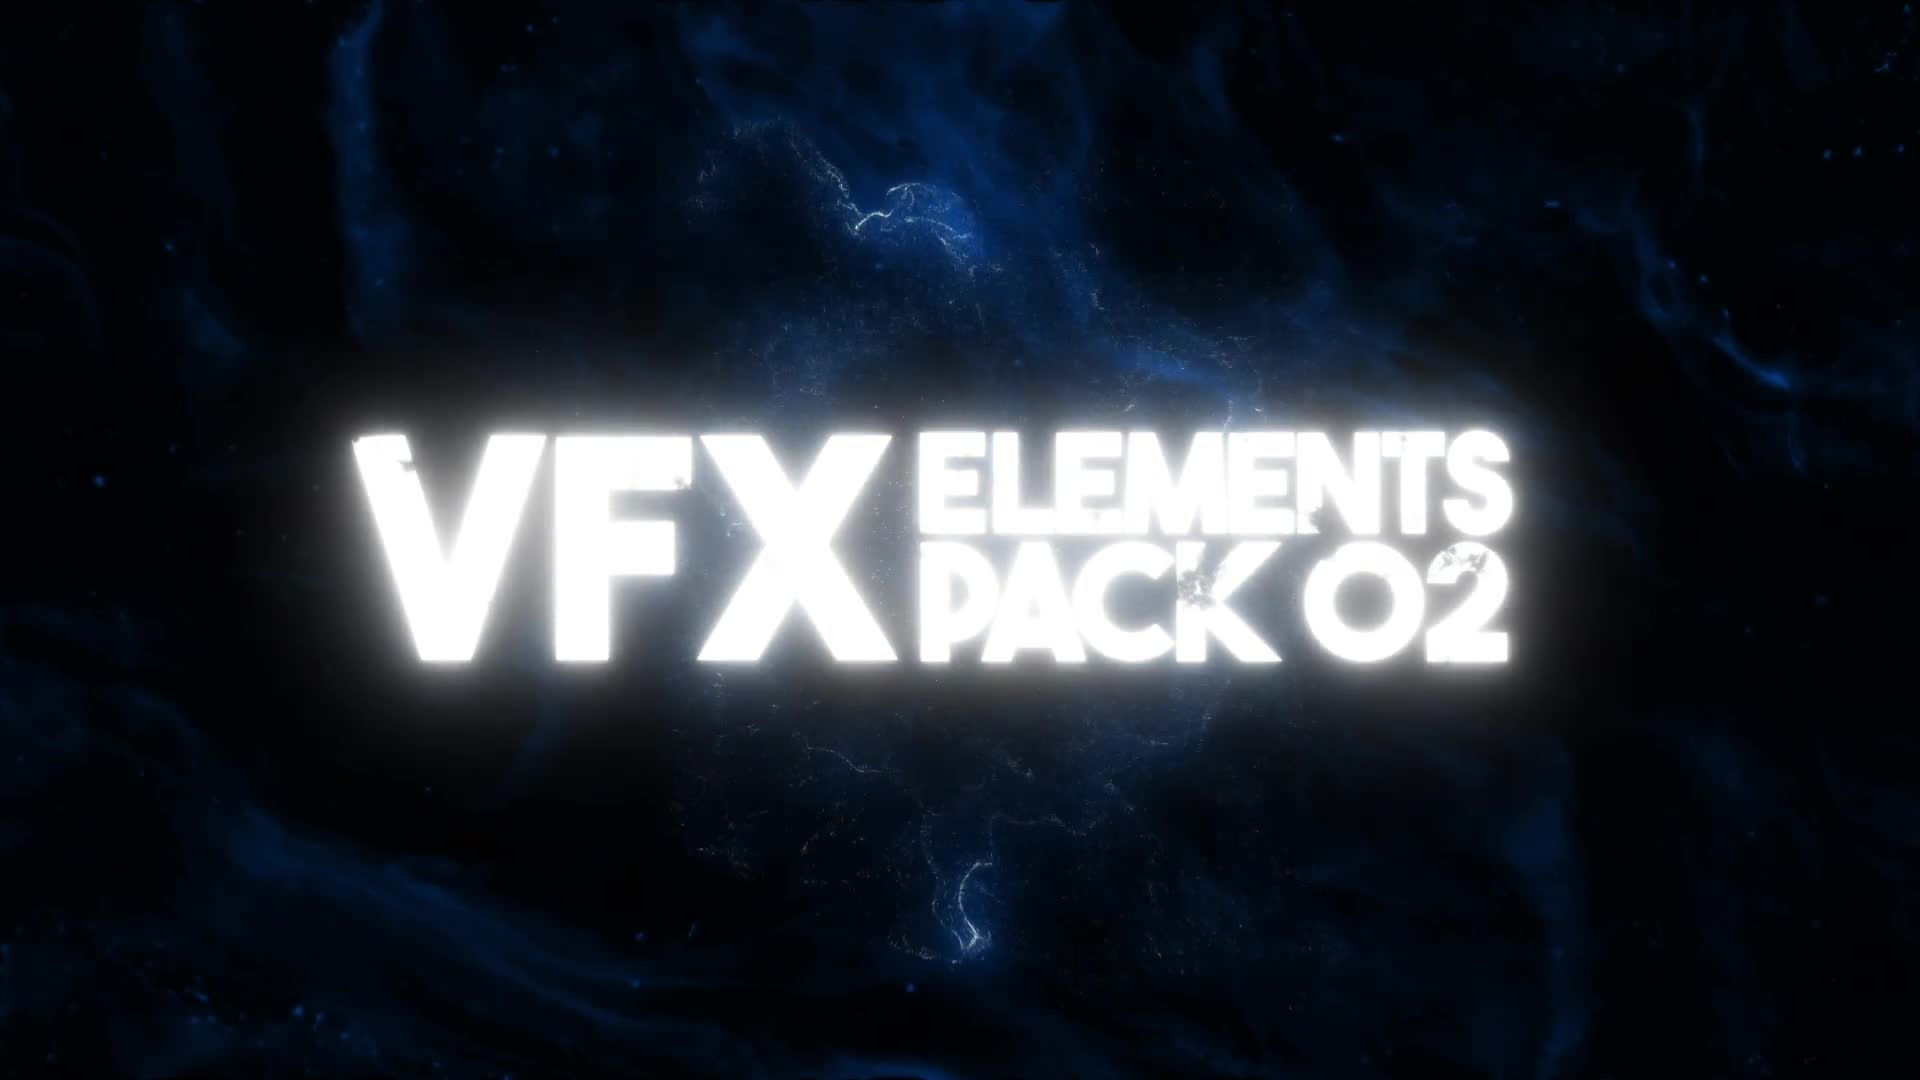 VFX Elements Pack 02 for Premiere Pro Videohive 39084744 Premiere Pro Image 1